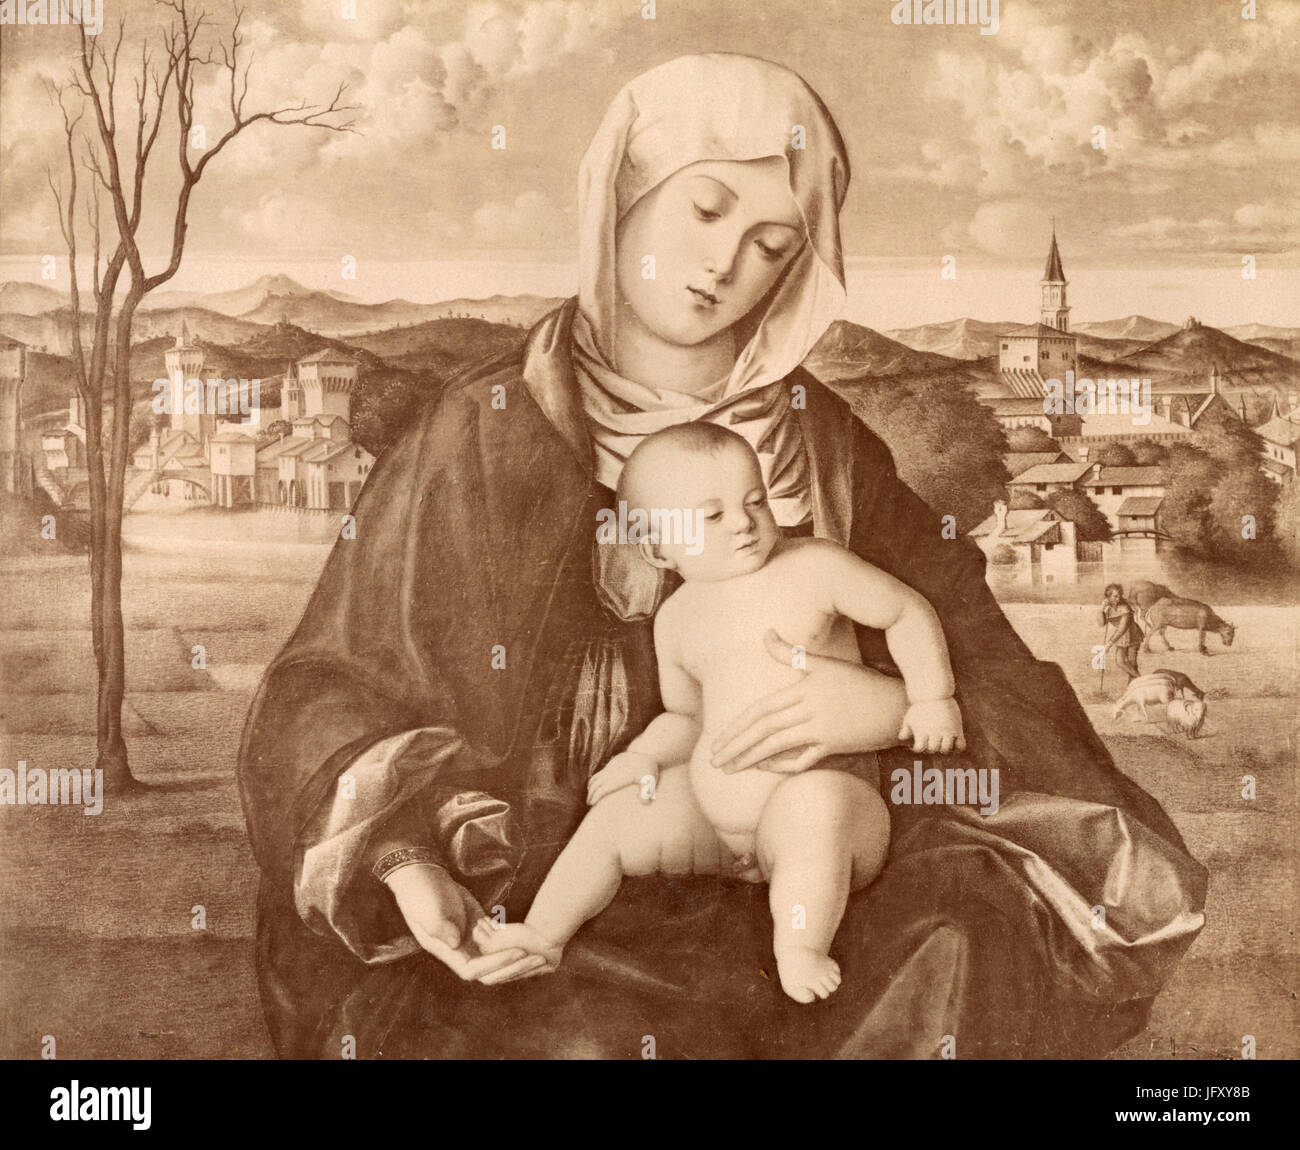 La Vierge et l'enfant, peinture par Bartolomeo Veneziano, Venise, Italie Banque D'Images